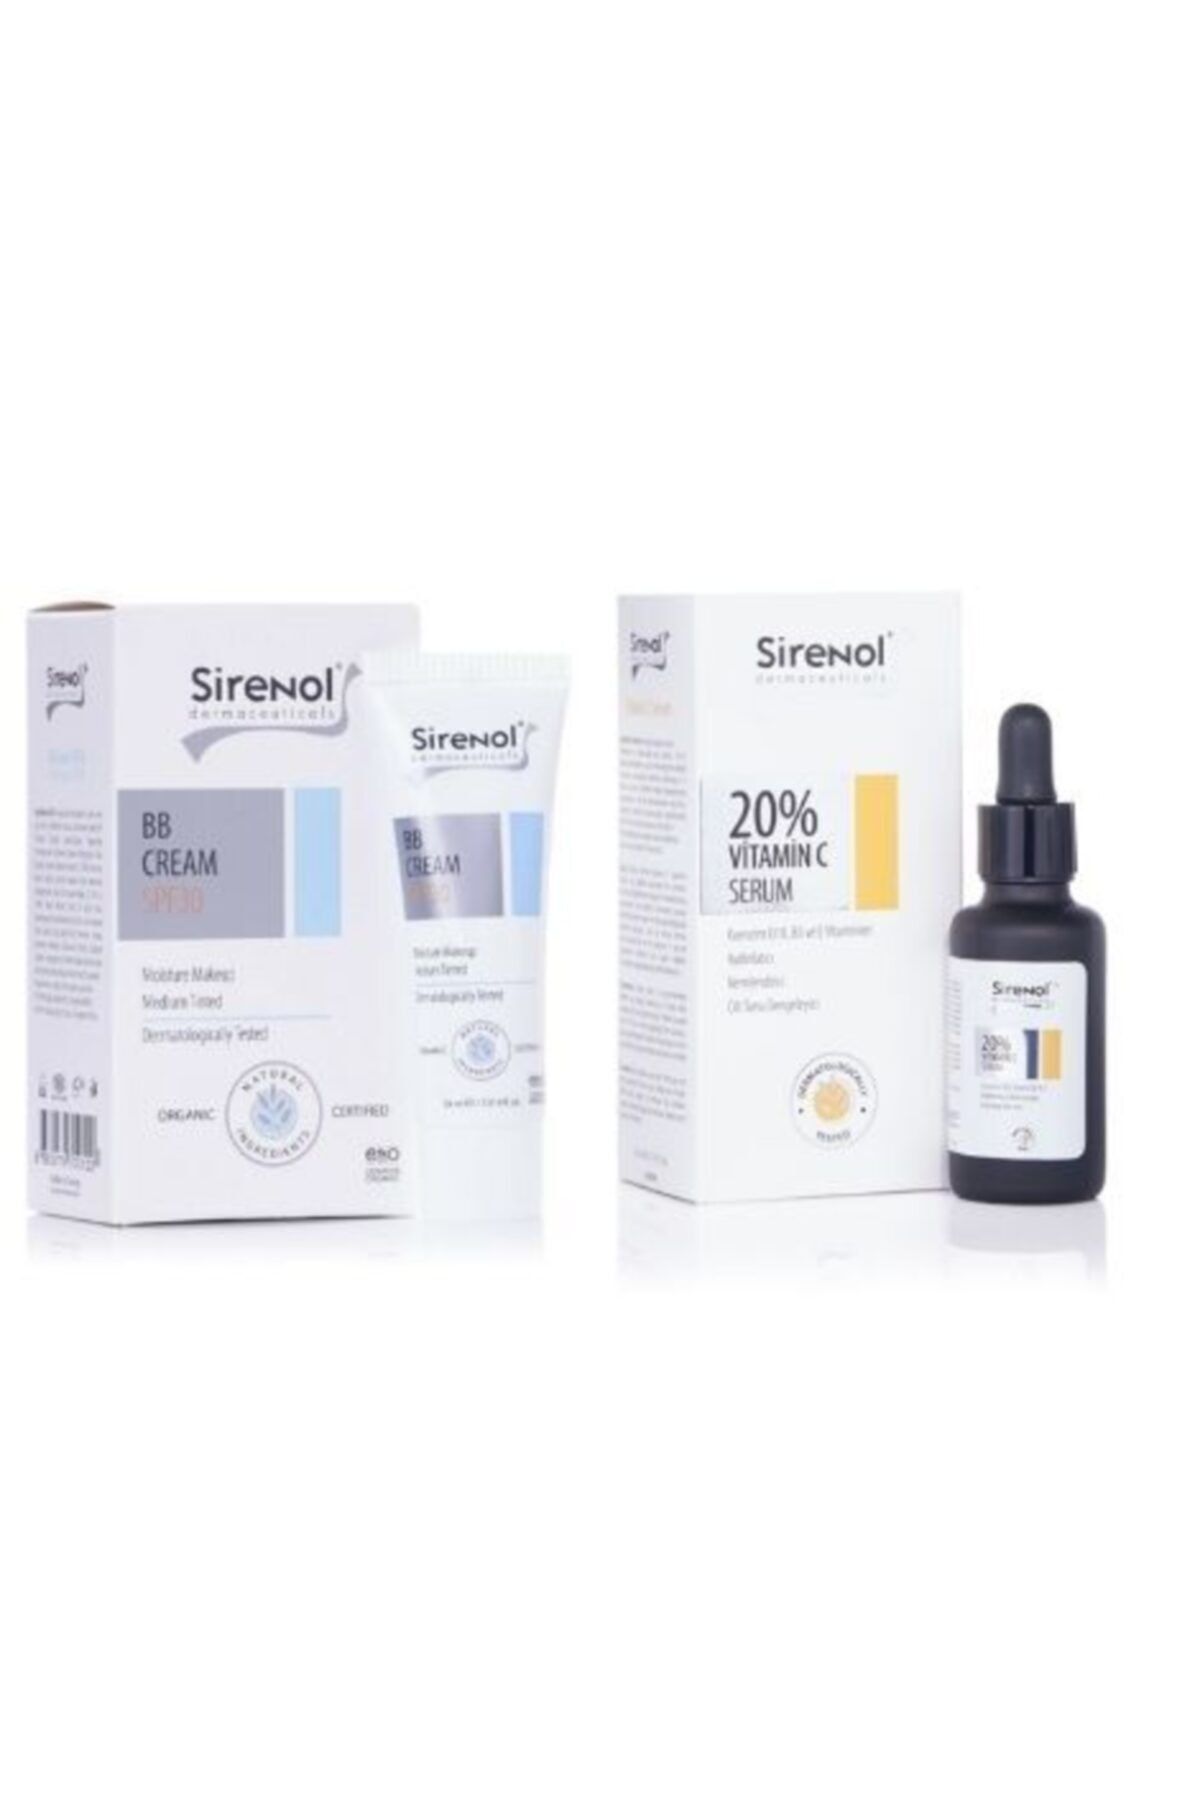 Sirenol Bb Krem Ve %20 Vitamin C Serum Seti